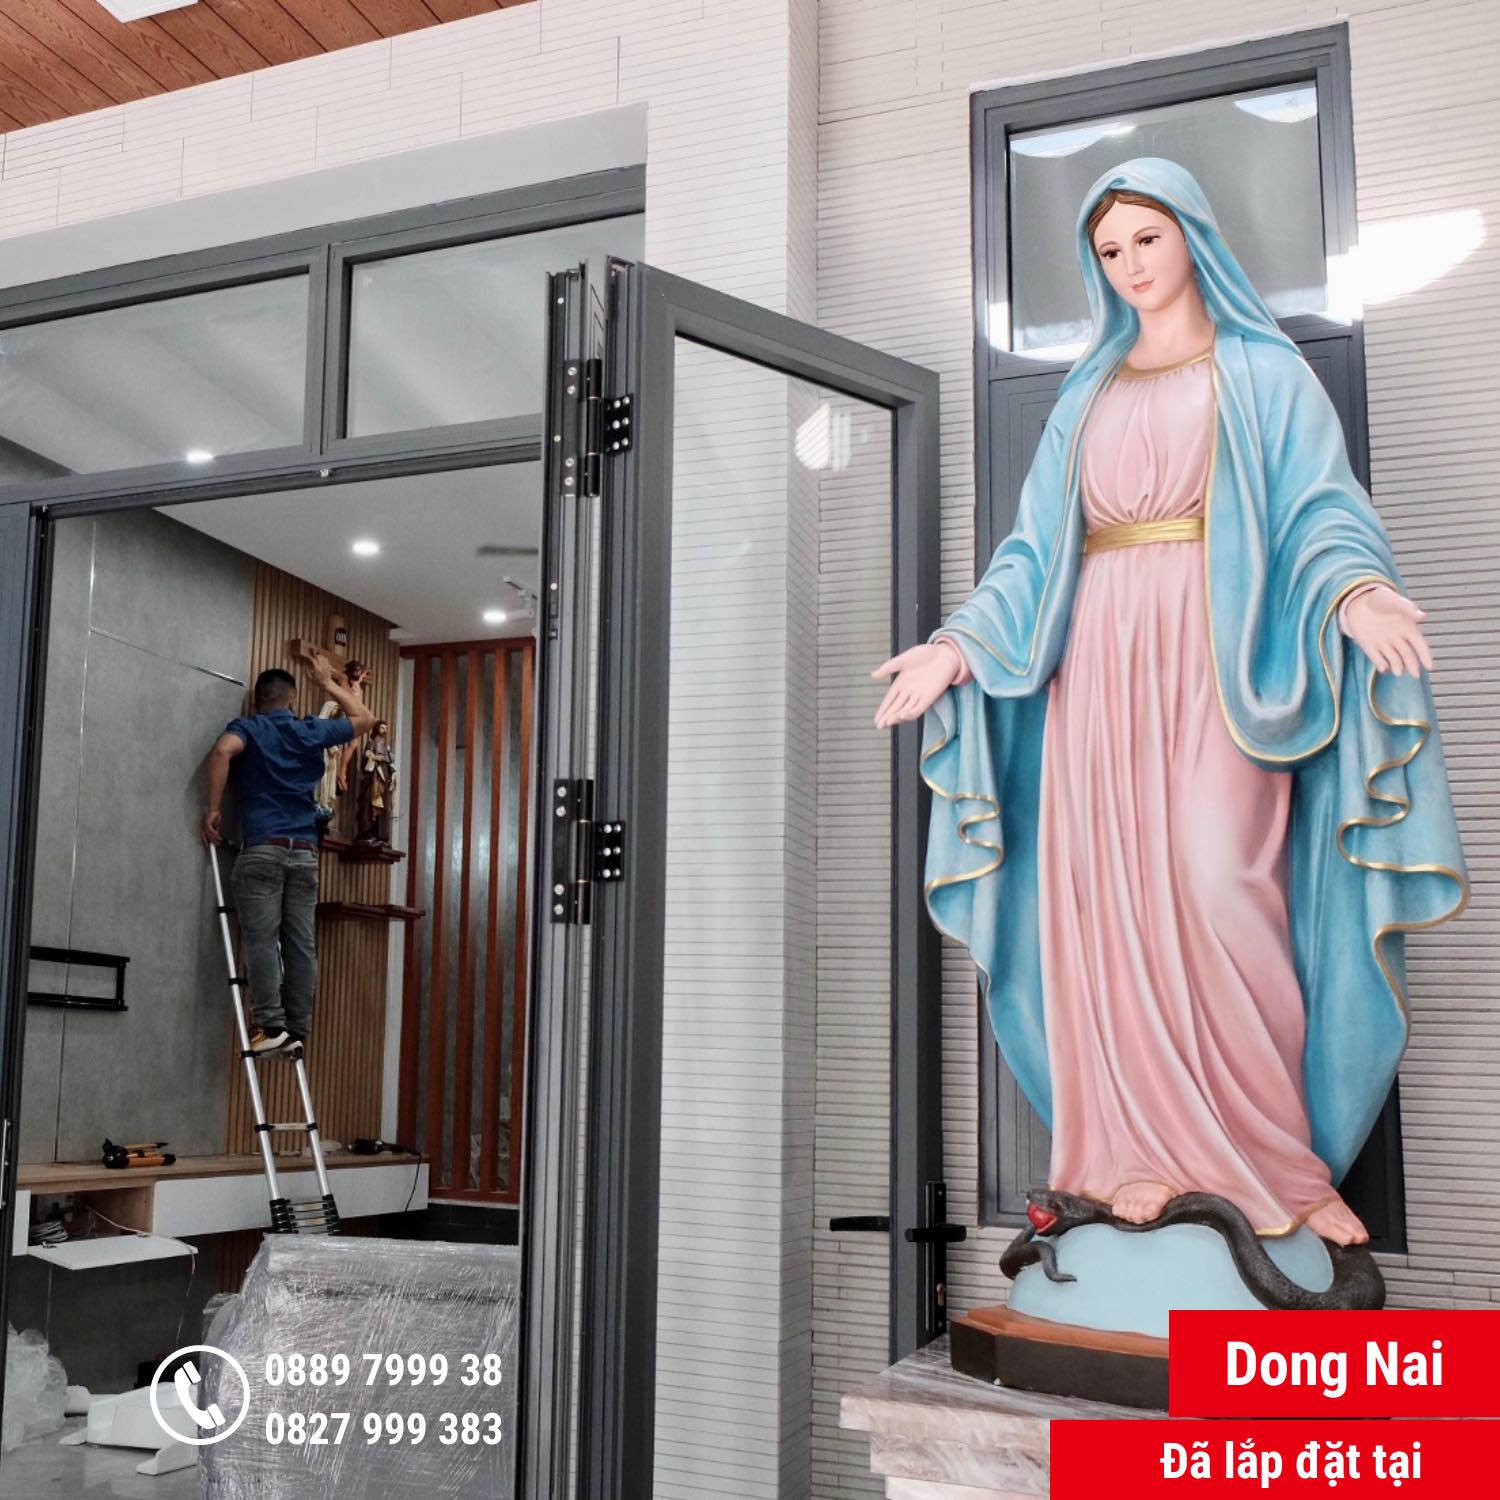 Những Mẫu Tượng Đức Mẹ Maria cao 1.2 mét / 1.6 mét đẹp nhất